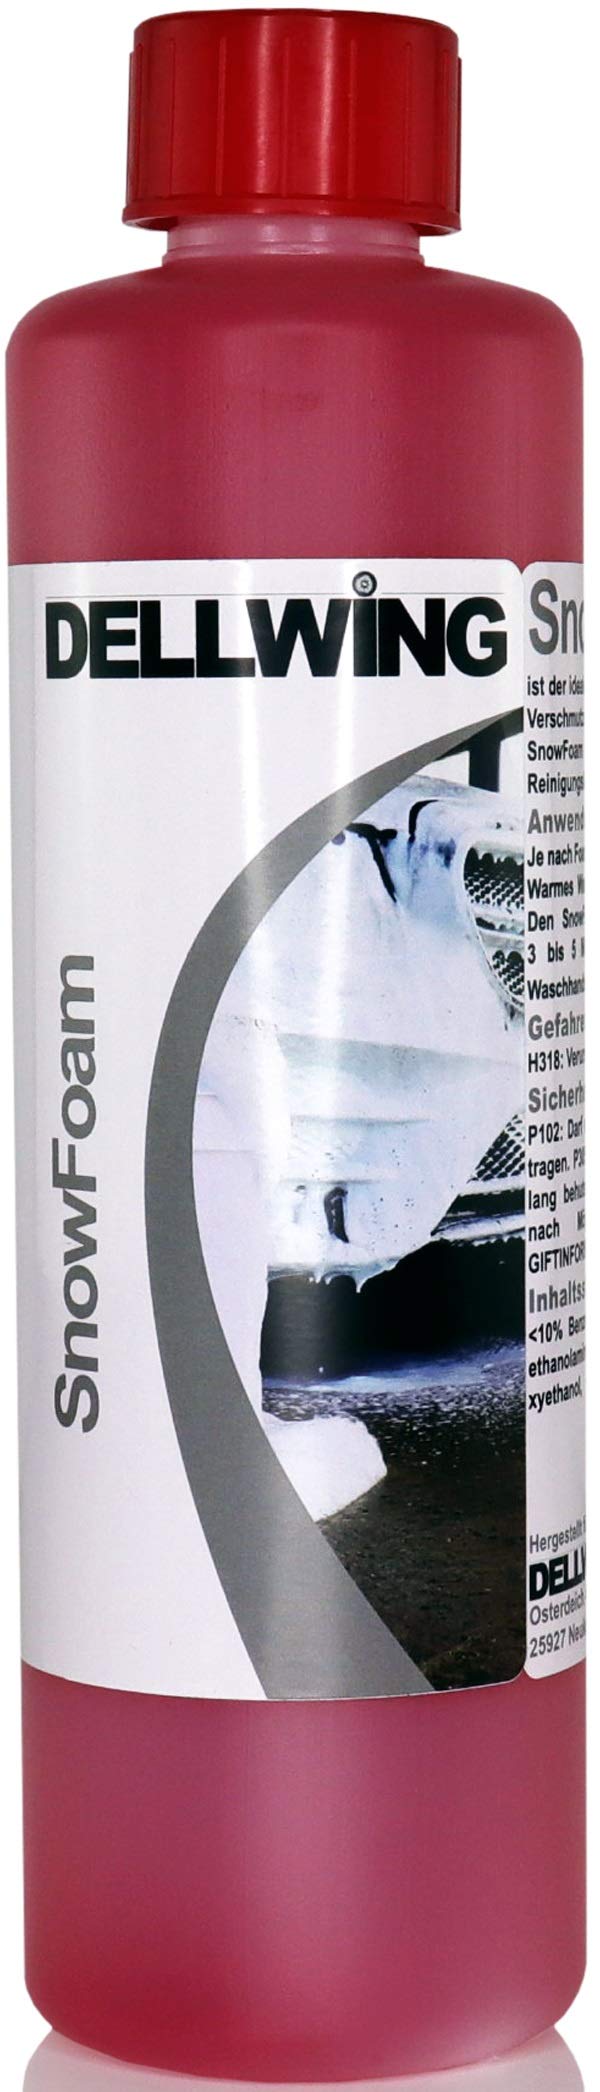 DELLWING Snow Foam Shampoo Energy 500 ml - Ideal für die sanfte Vorwäsche - Bildet eine dicke und langanhaltende Schaumdecke mit einem schönen Duft von DELLWING